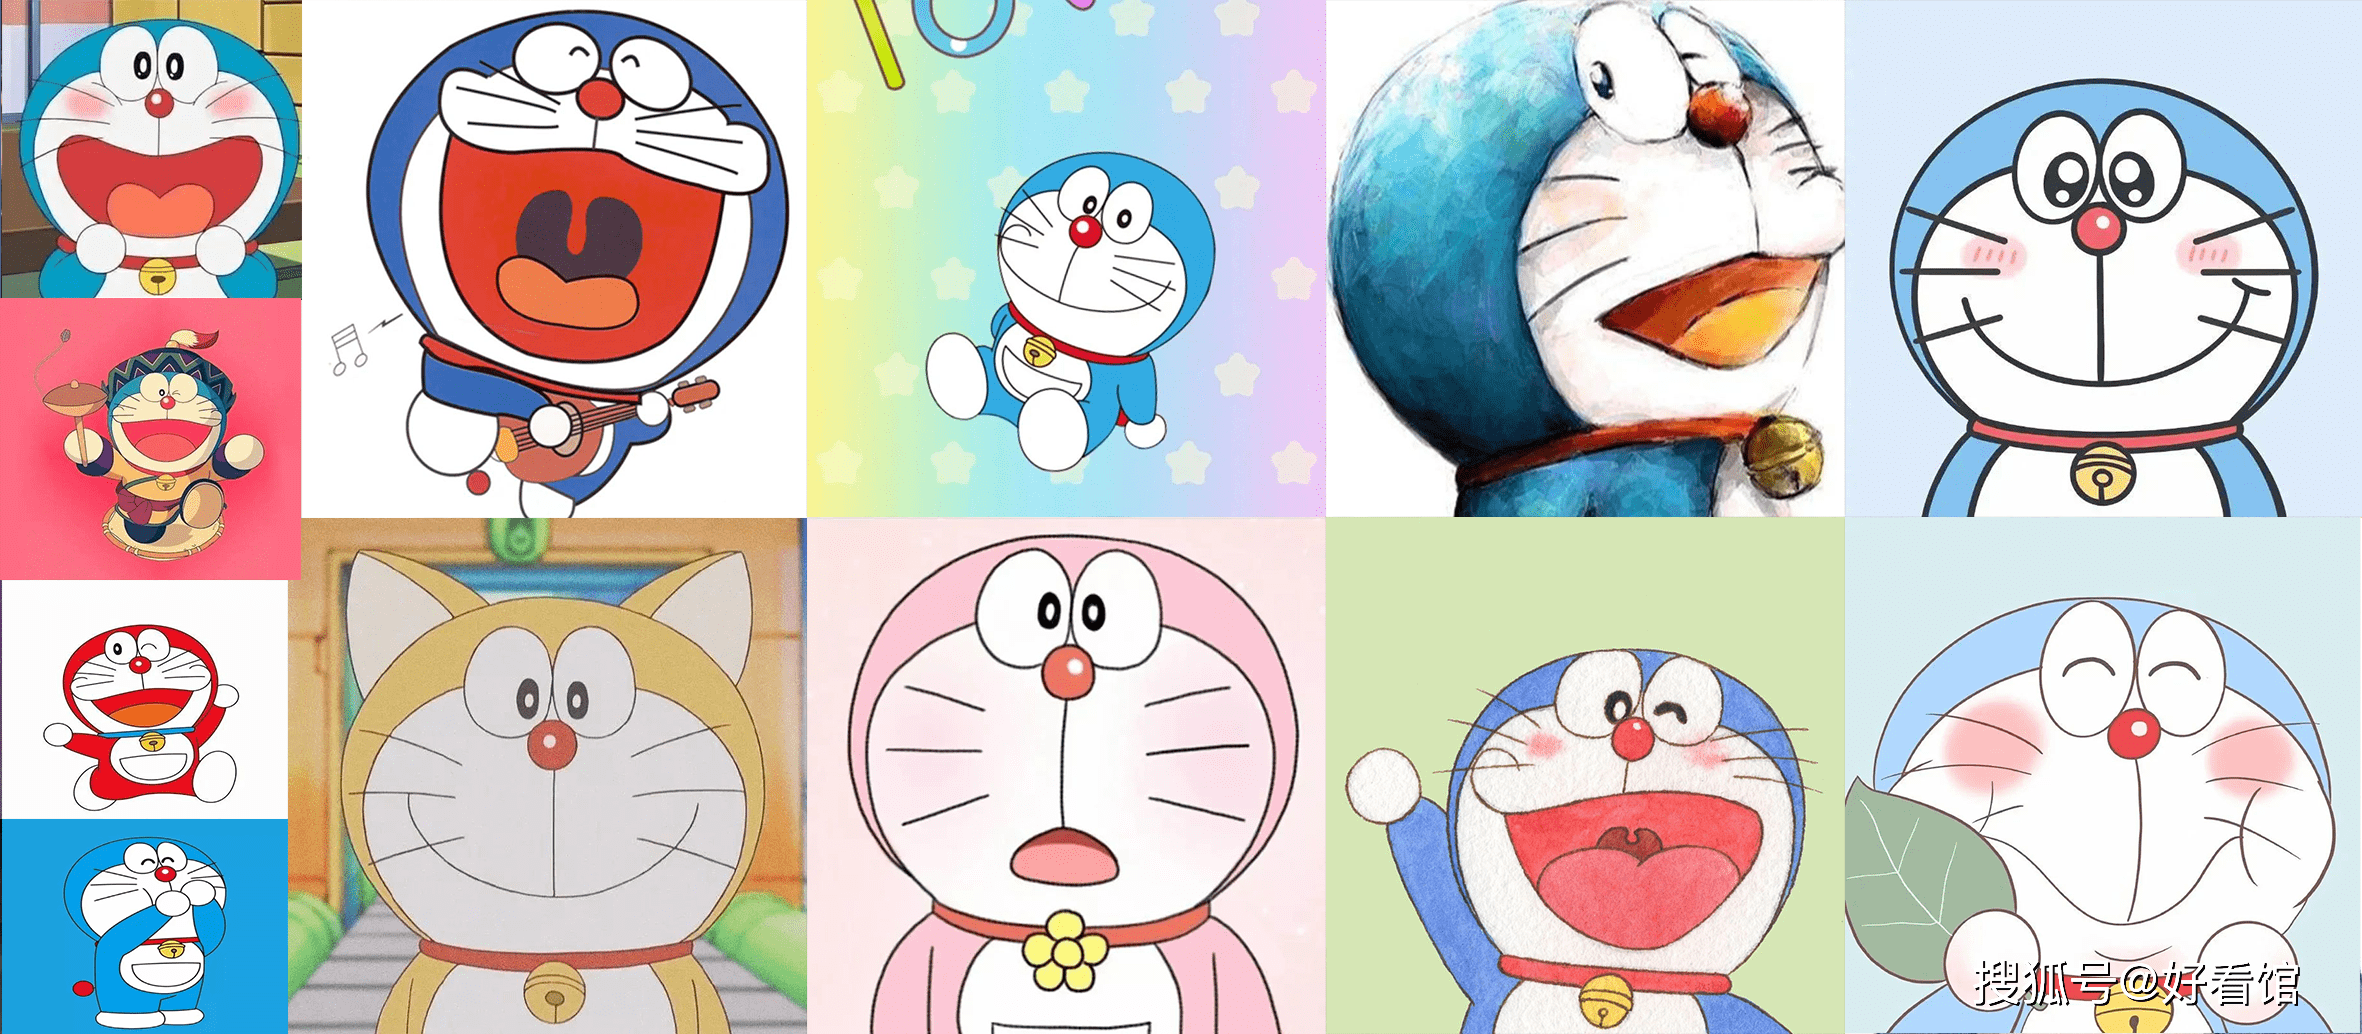 叮当猫头像图片大全 动漫卡通头像 Doraemon 哆啦a梦头像图片大全 机器猫 Weixin